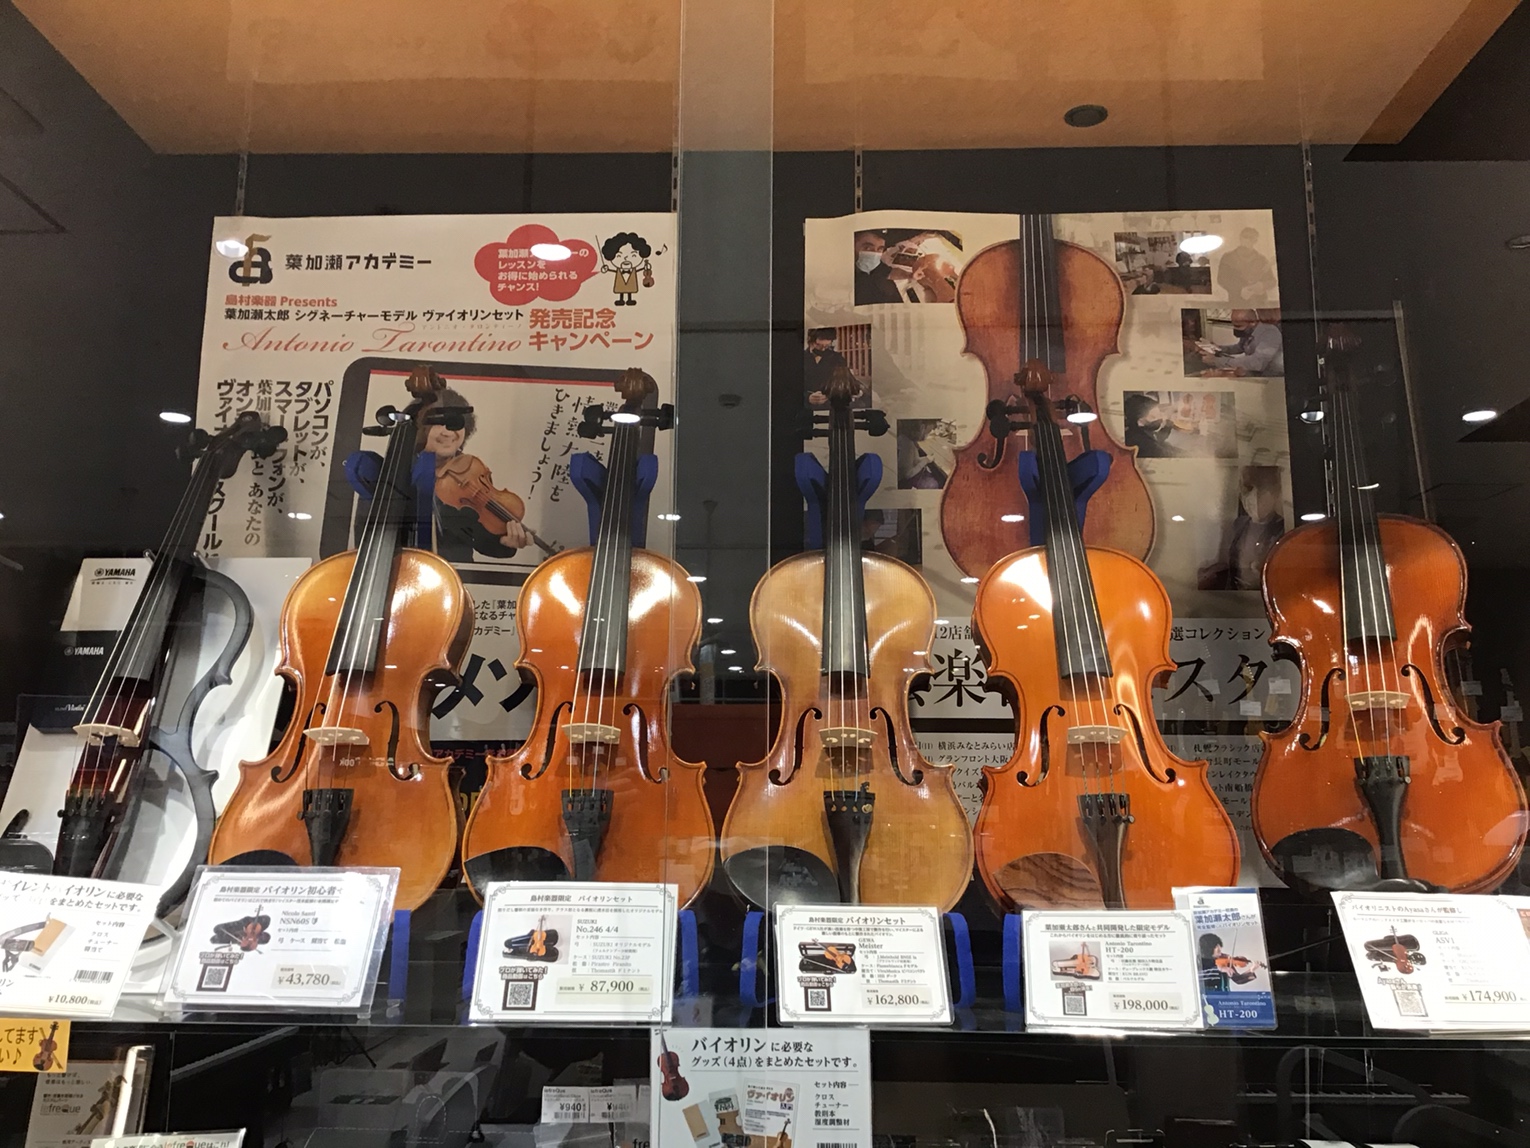 *ヴァイオリン（バイオリン）総合案内。栃木県でヴァイオリンを購入されるなら当店にご相談ください。 当店にて展示のございますラインナップです。全ての機種はお試し可能です。 （展示の機種以外や分数モデルなども取りせできます。当店スタッフにお問合せください） |[#h:title=ヴァイオリンご購入の前に […]